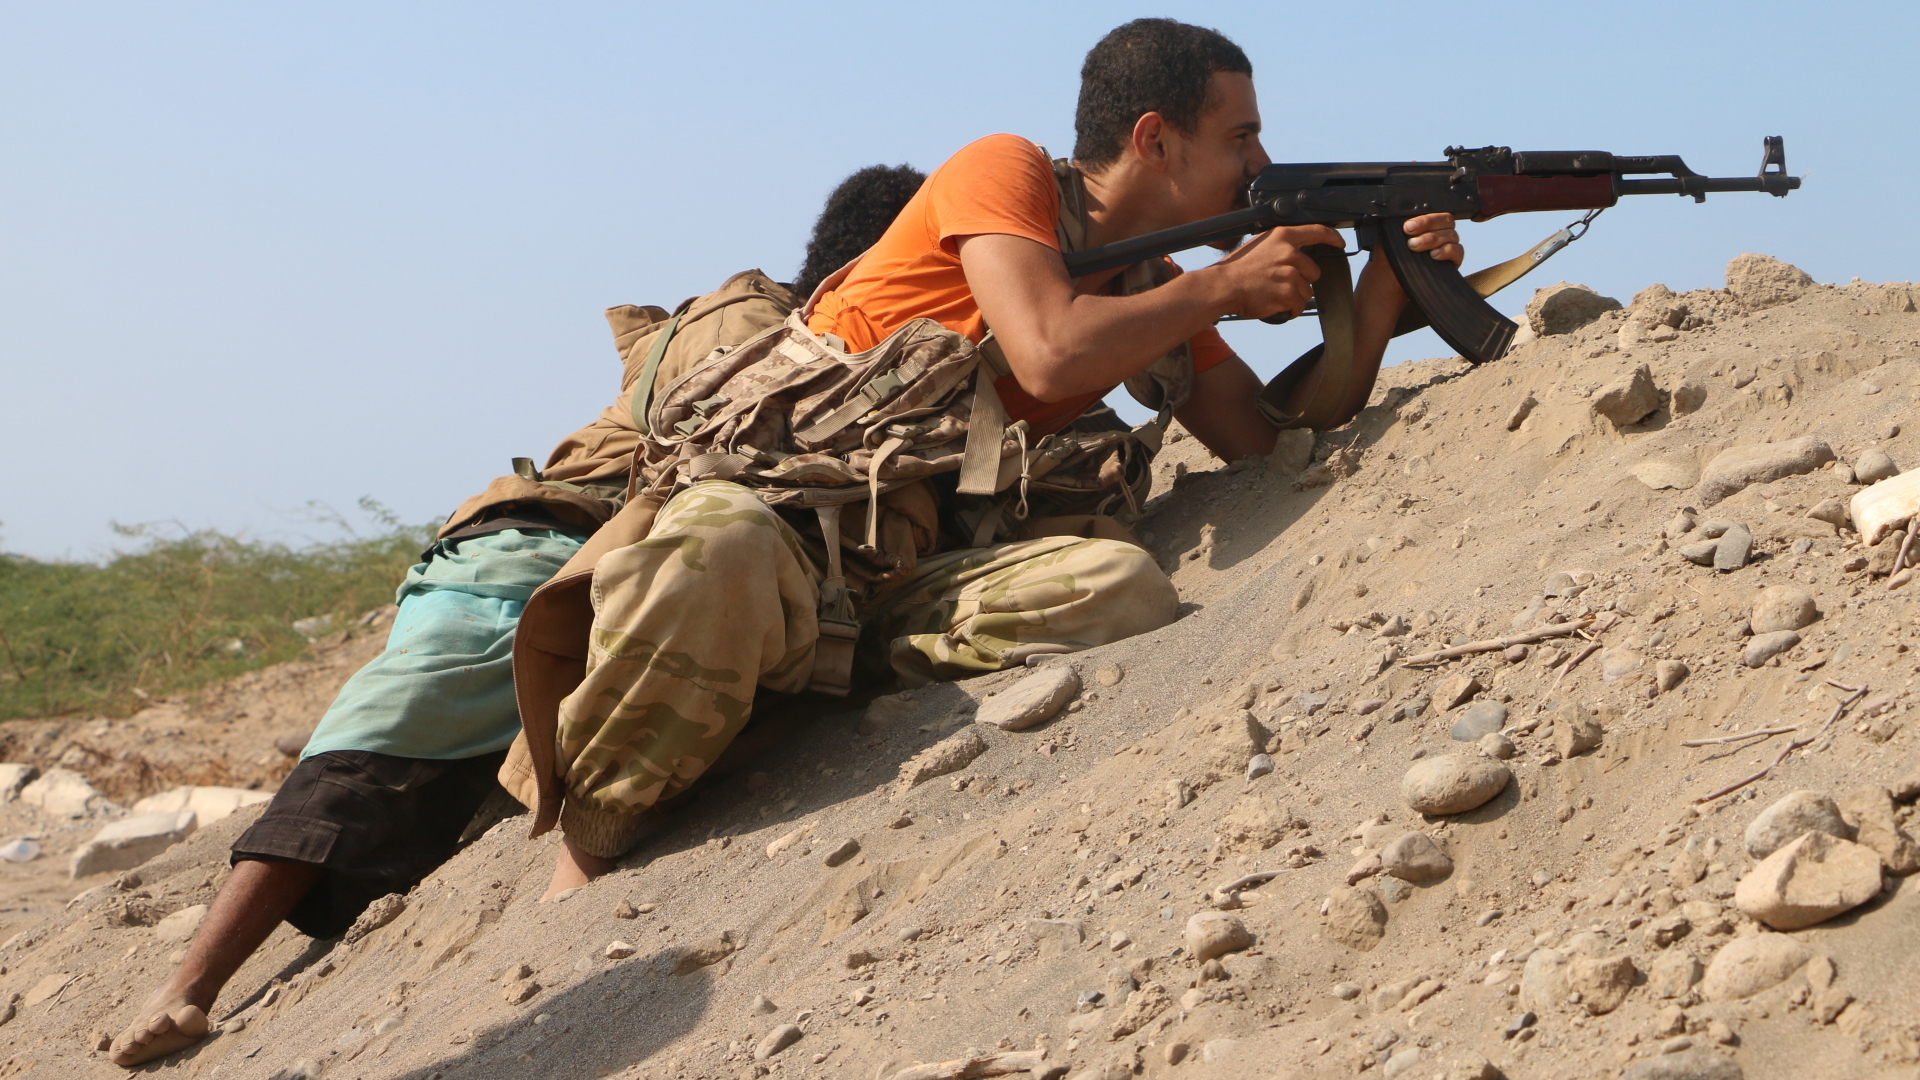 Anhänger der jemenitischen Regierungstruppen in Hudeida. Foto vom 10. Dezember dieses Jahres. | Bildquelle: NAJEEB ALMAHBOOBI/EPA-EFE/REX